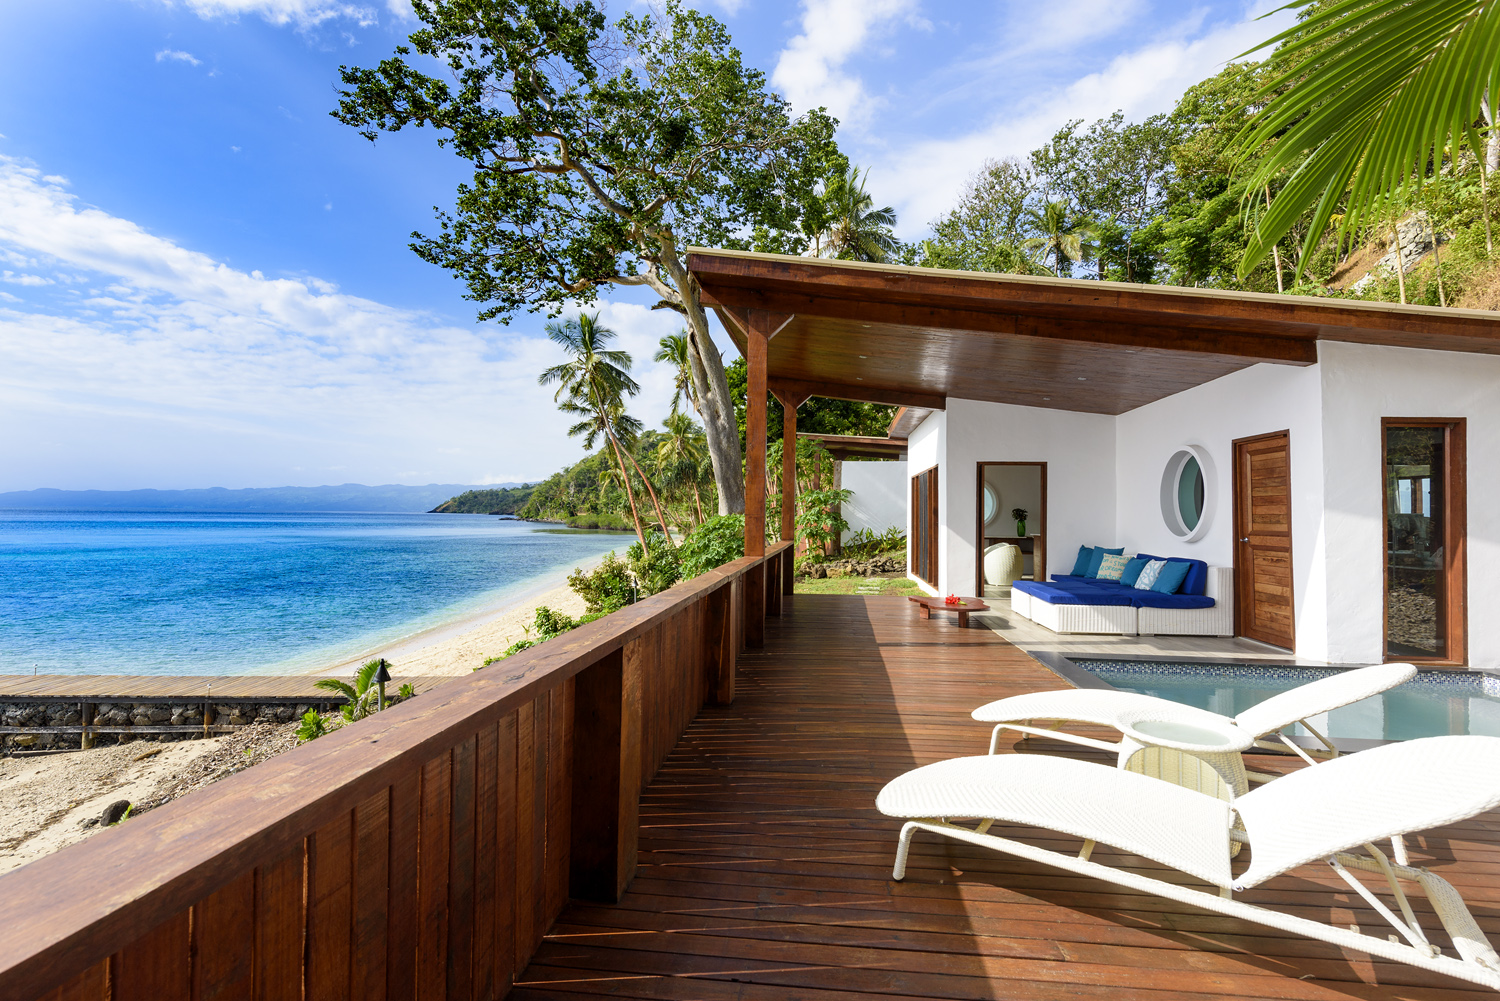 Oceanfront Retreat Views, The Remote Resort Fiji Islands